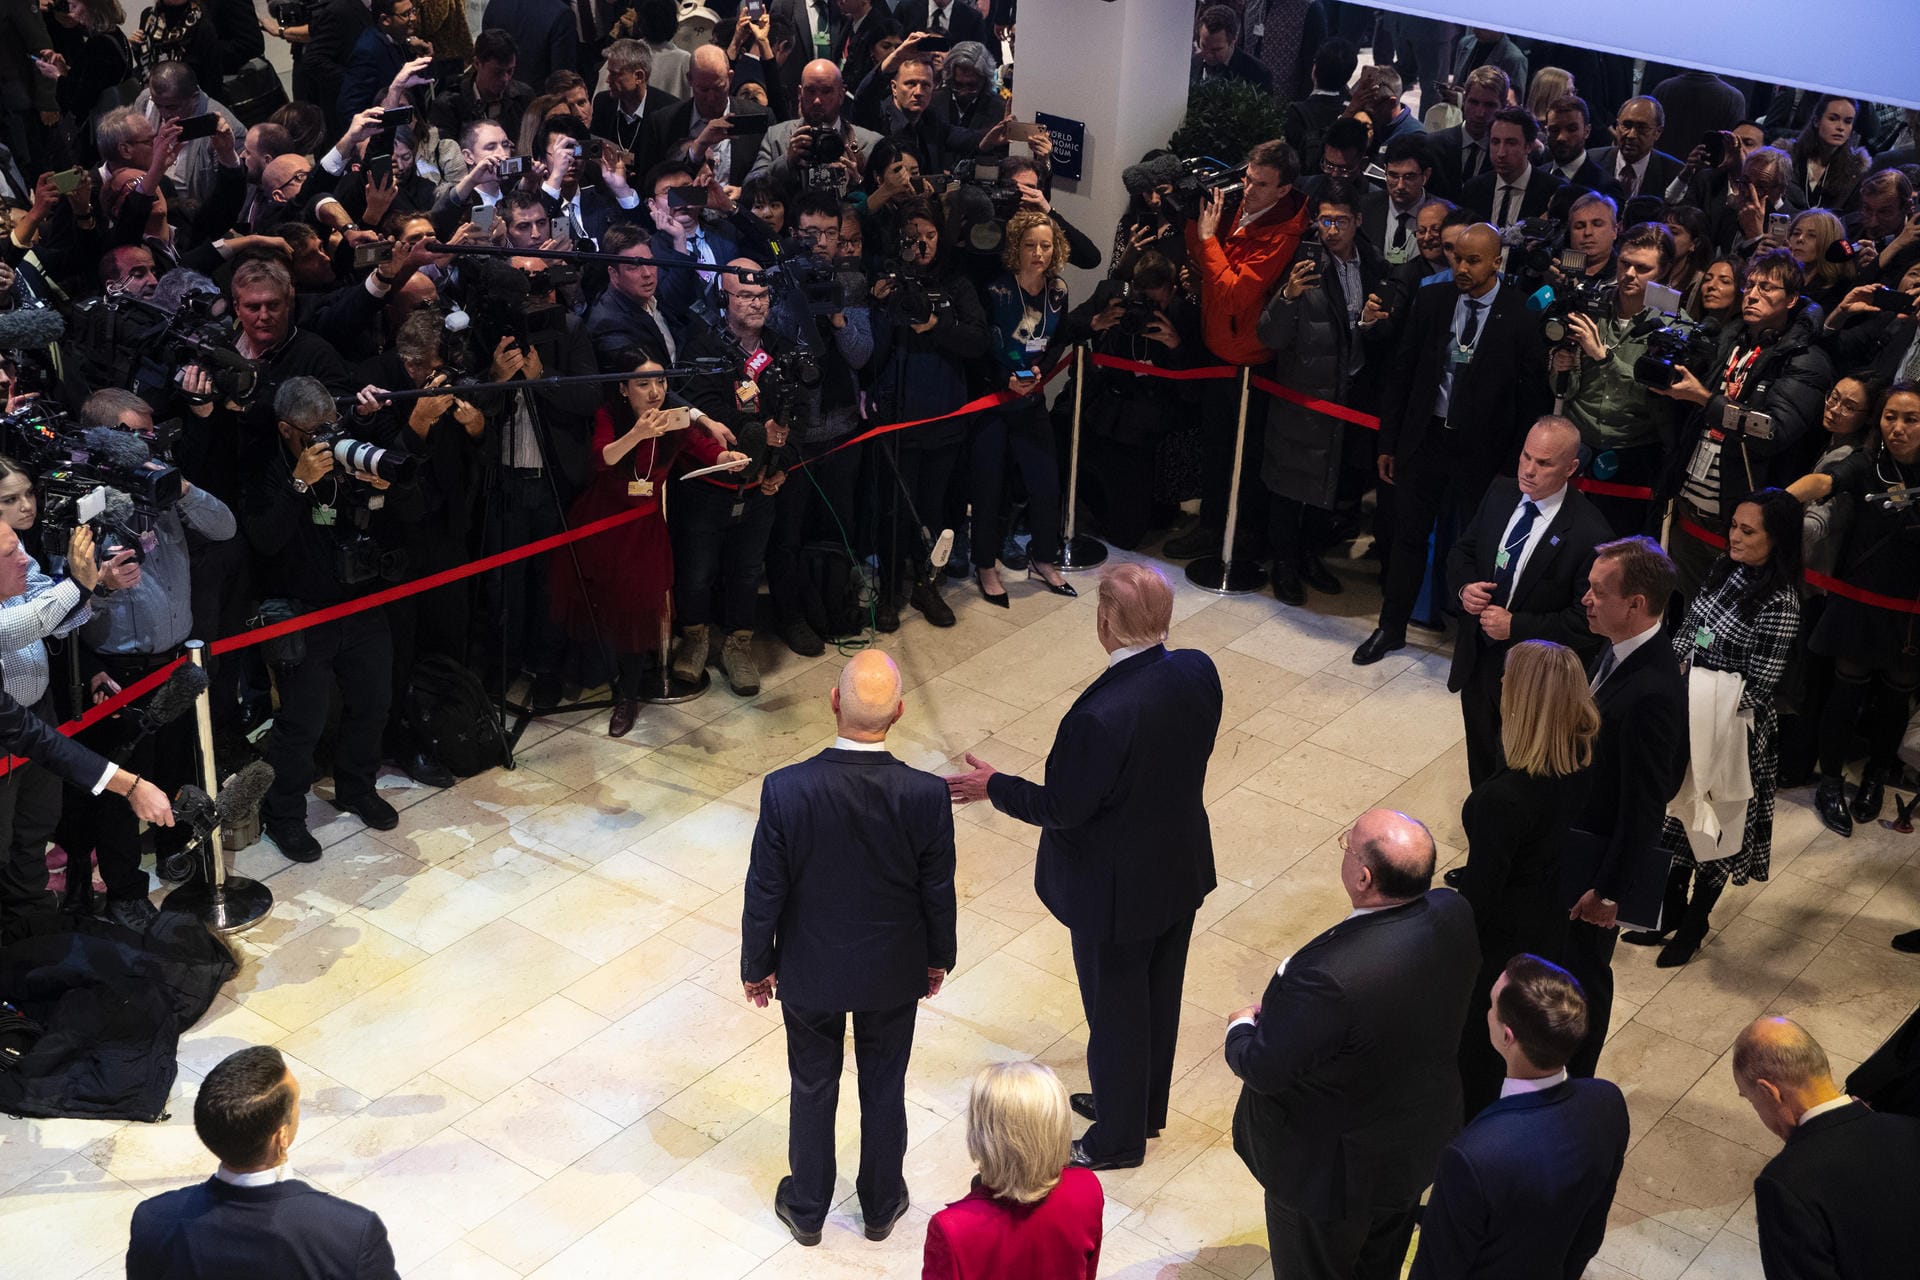 Der Stargast: Donald Trump wird in Davos von Fotografen umrahmt, links neben ihm steht Tagungs-Chef Klaus Schwab.